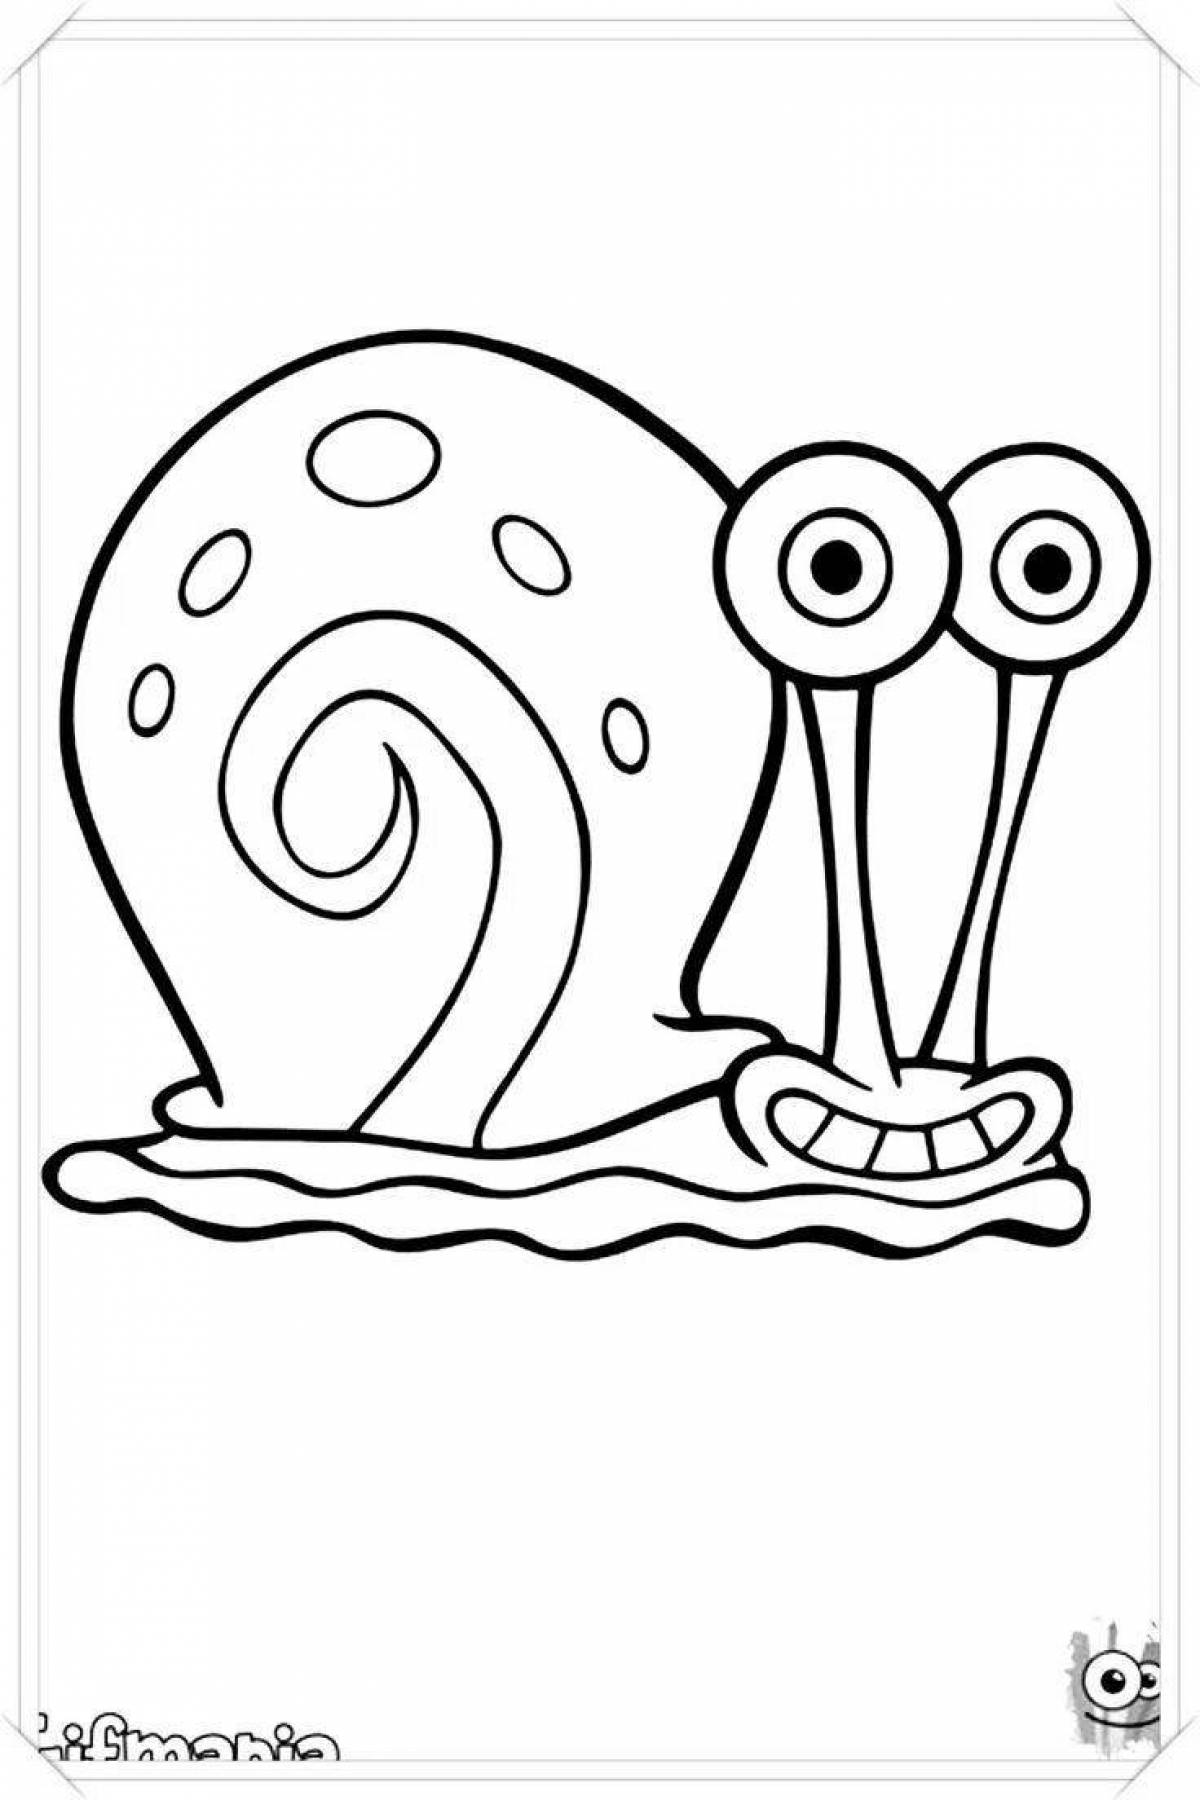 Gary's funny snail